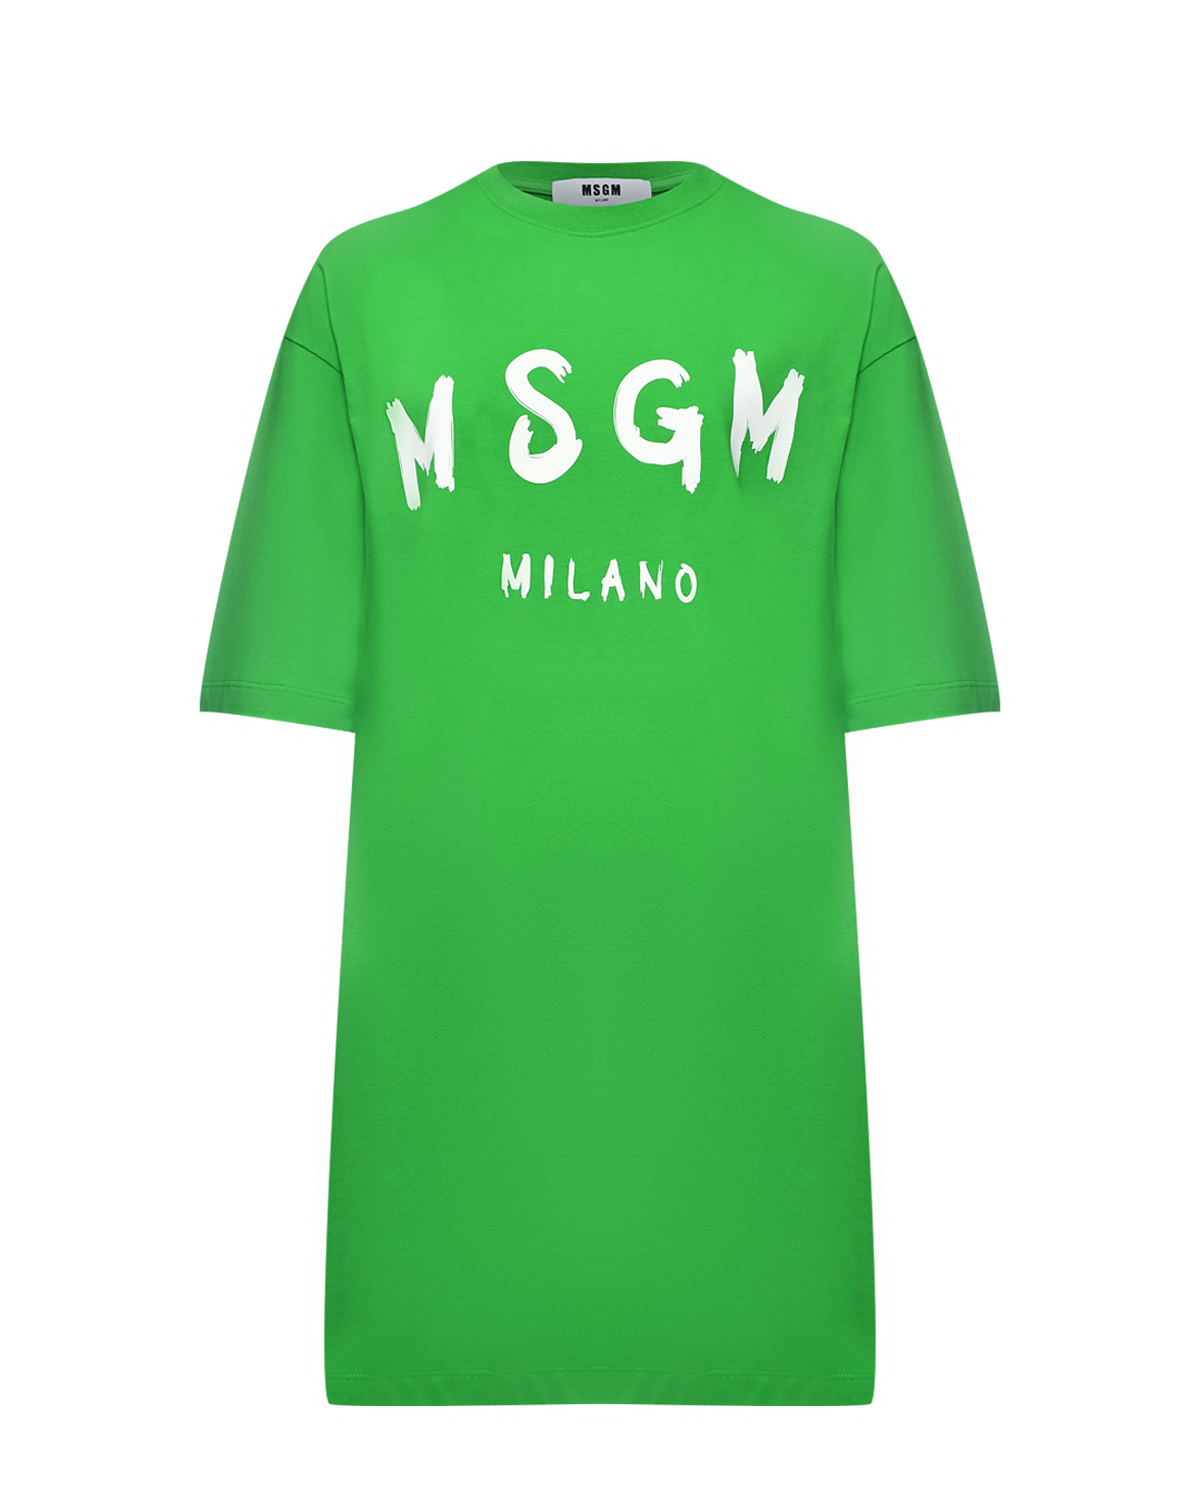 Платье-футболка, лого на груди MSGM, размер 40, цвет зеленый